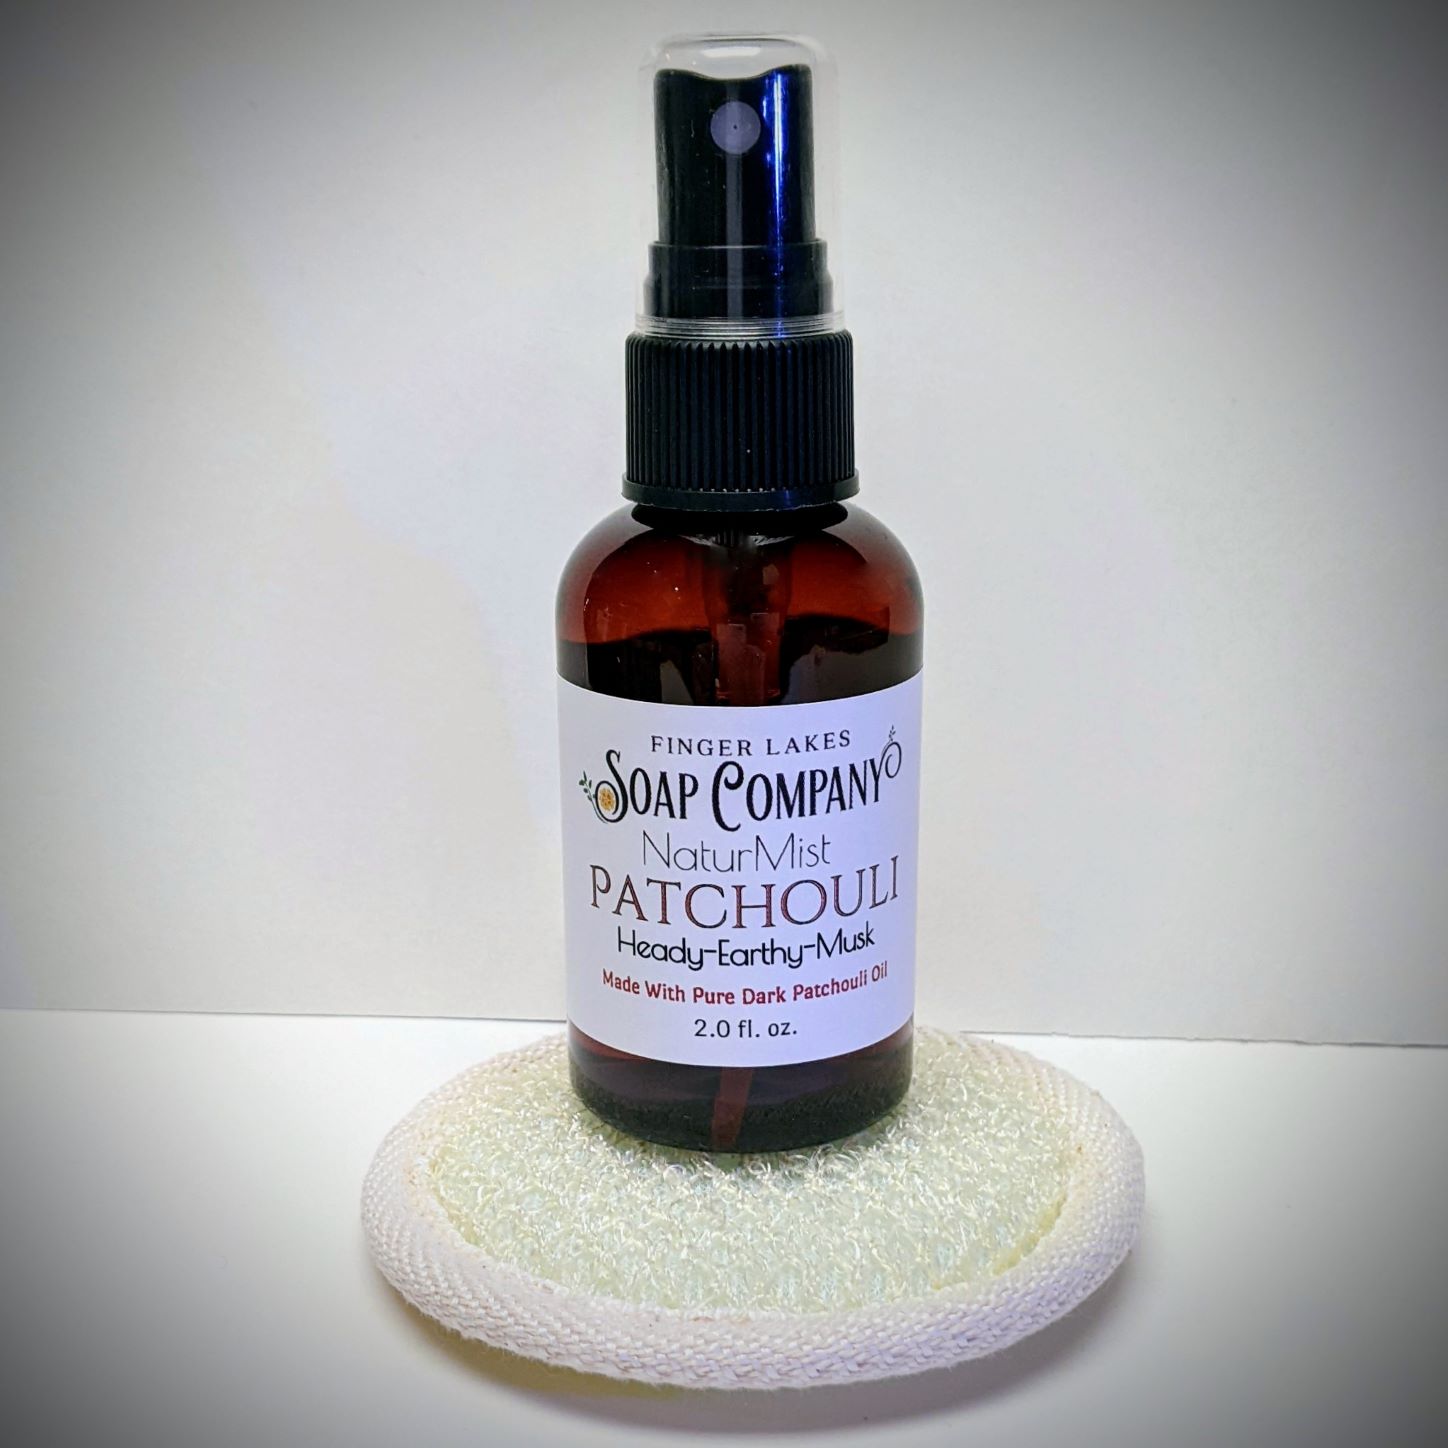 Patchouli Essential Oil – Alegria Soap Shop & Factory